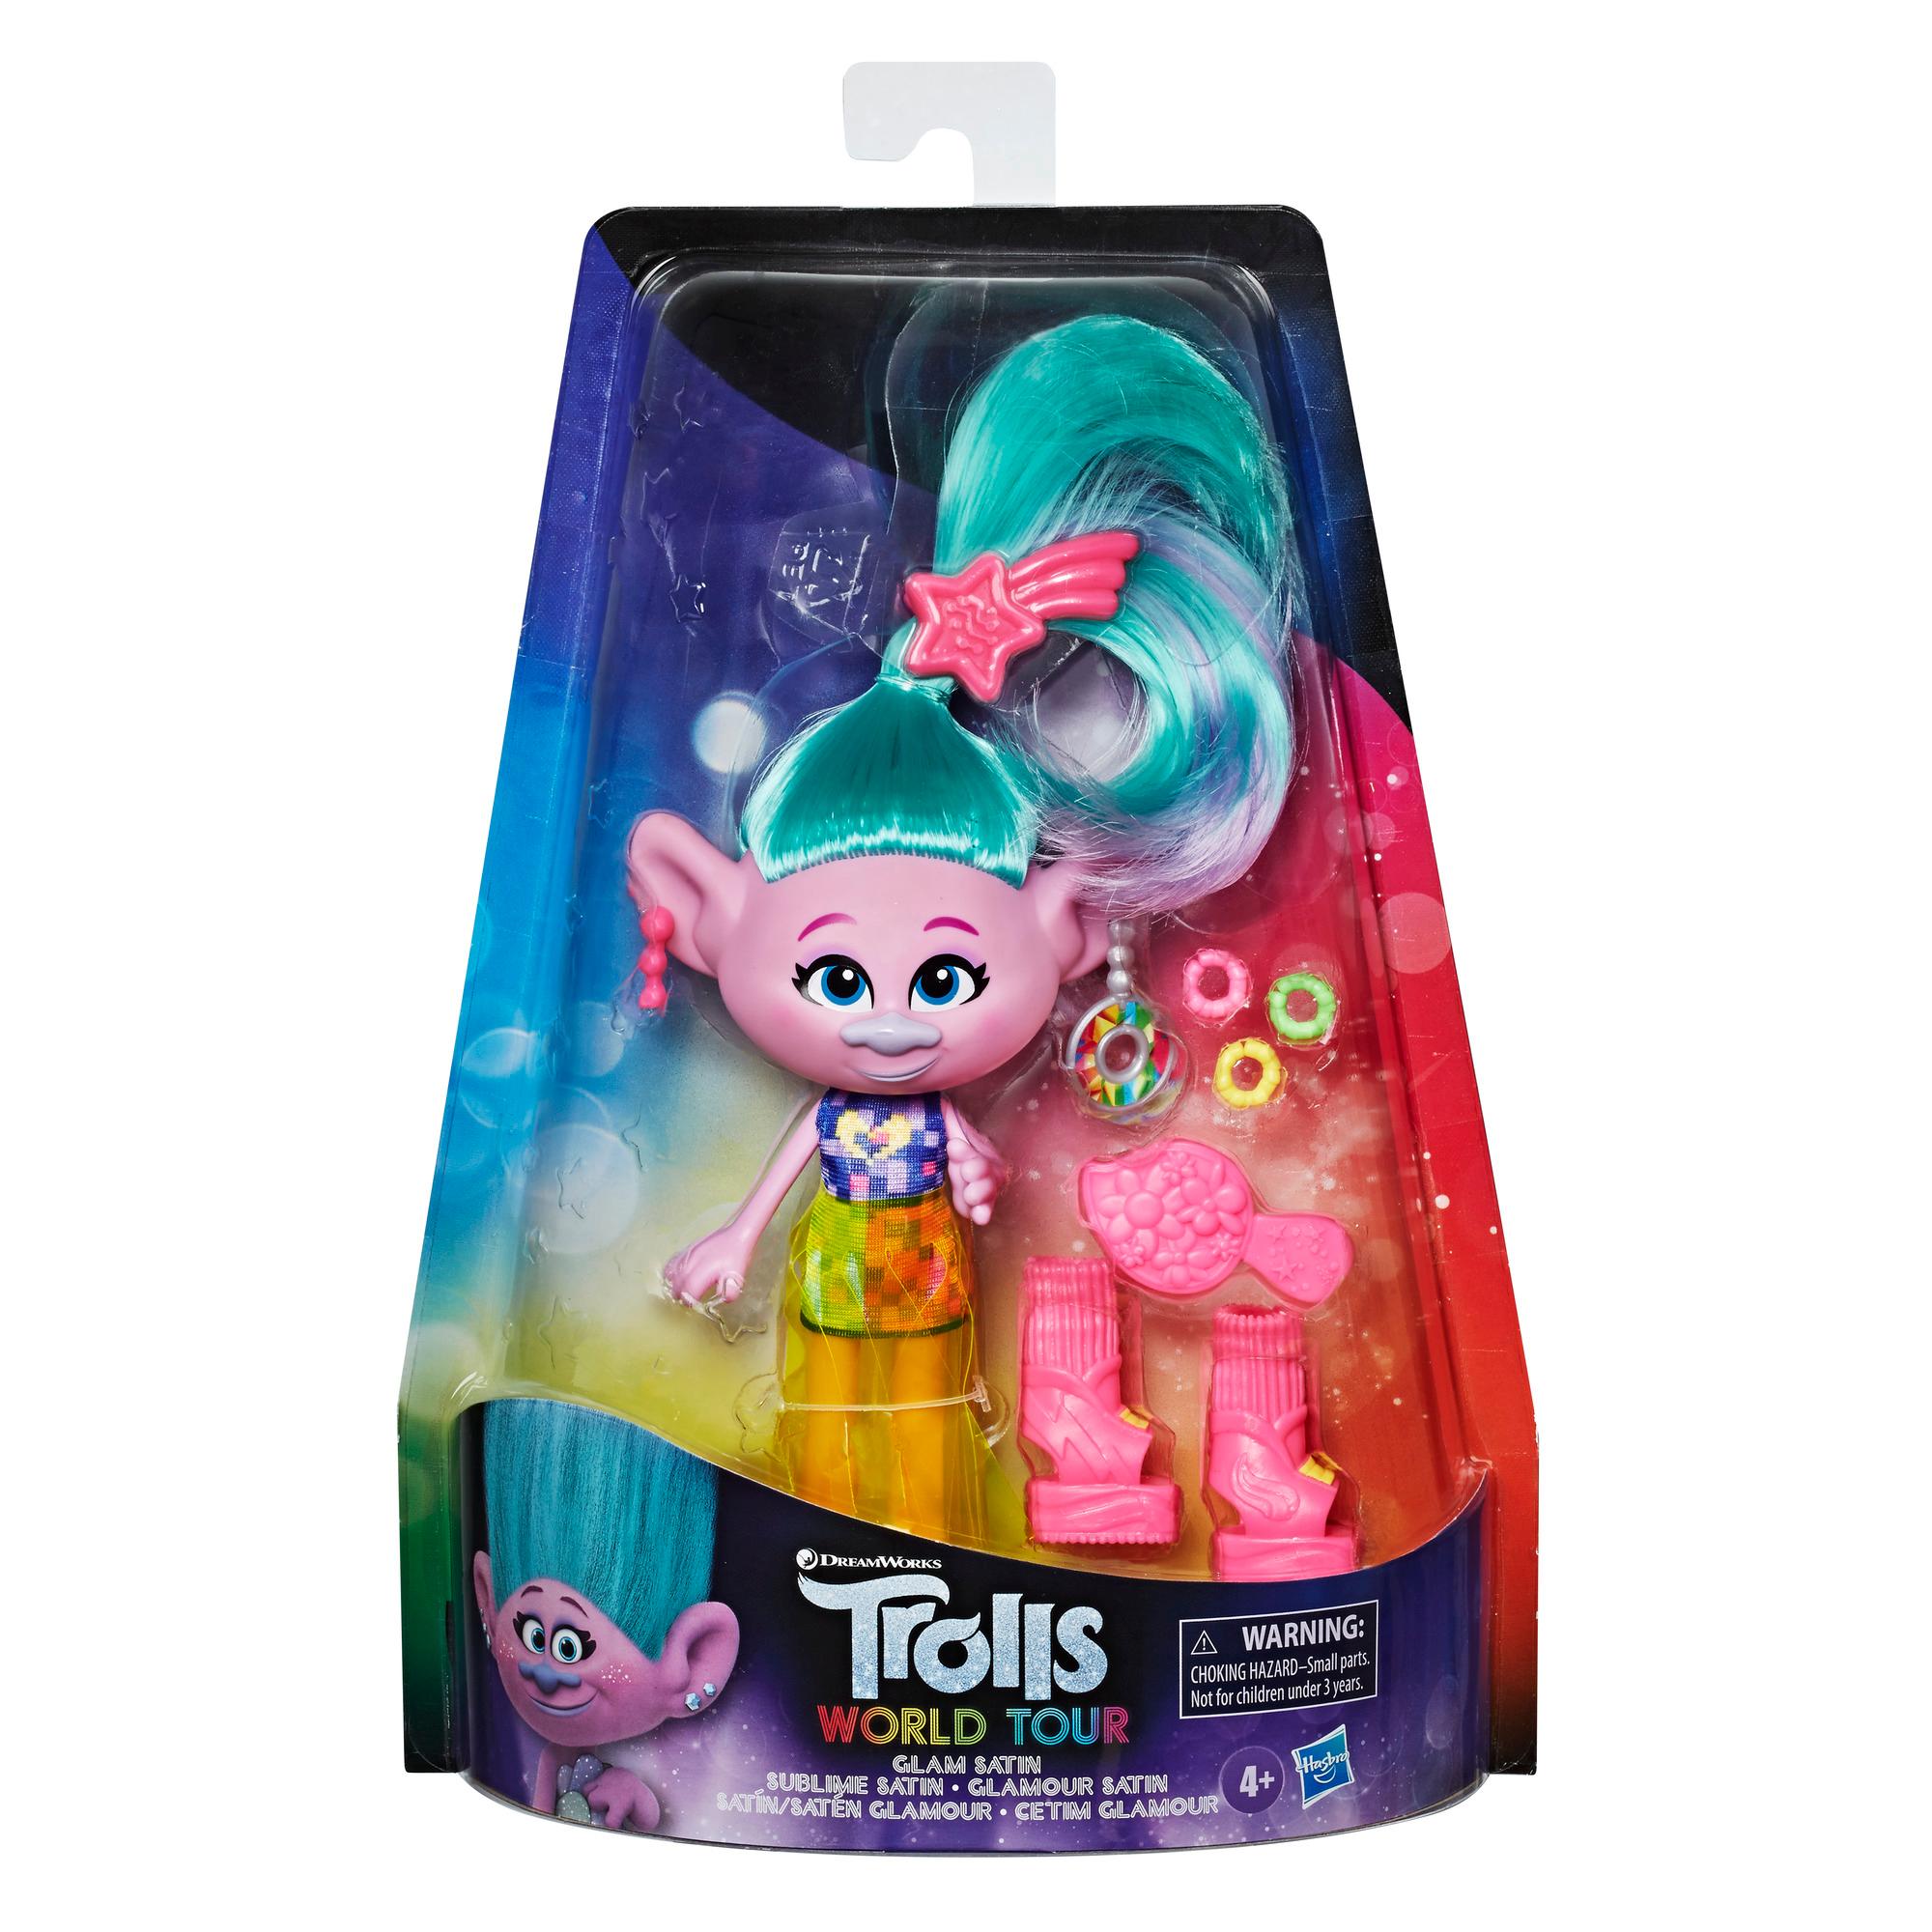 DreamWorks Trolls Cetim Glamour com vestido, sapato e outros acessórios, com inspiração no filme Trolls World Tour, brinquedo para crianças